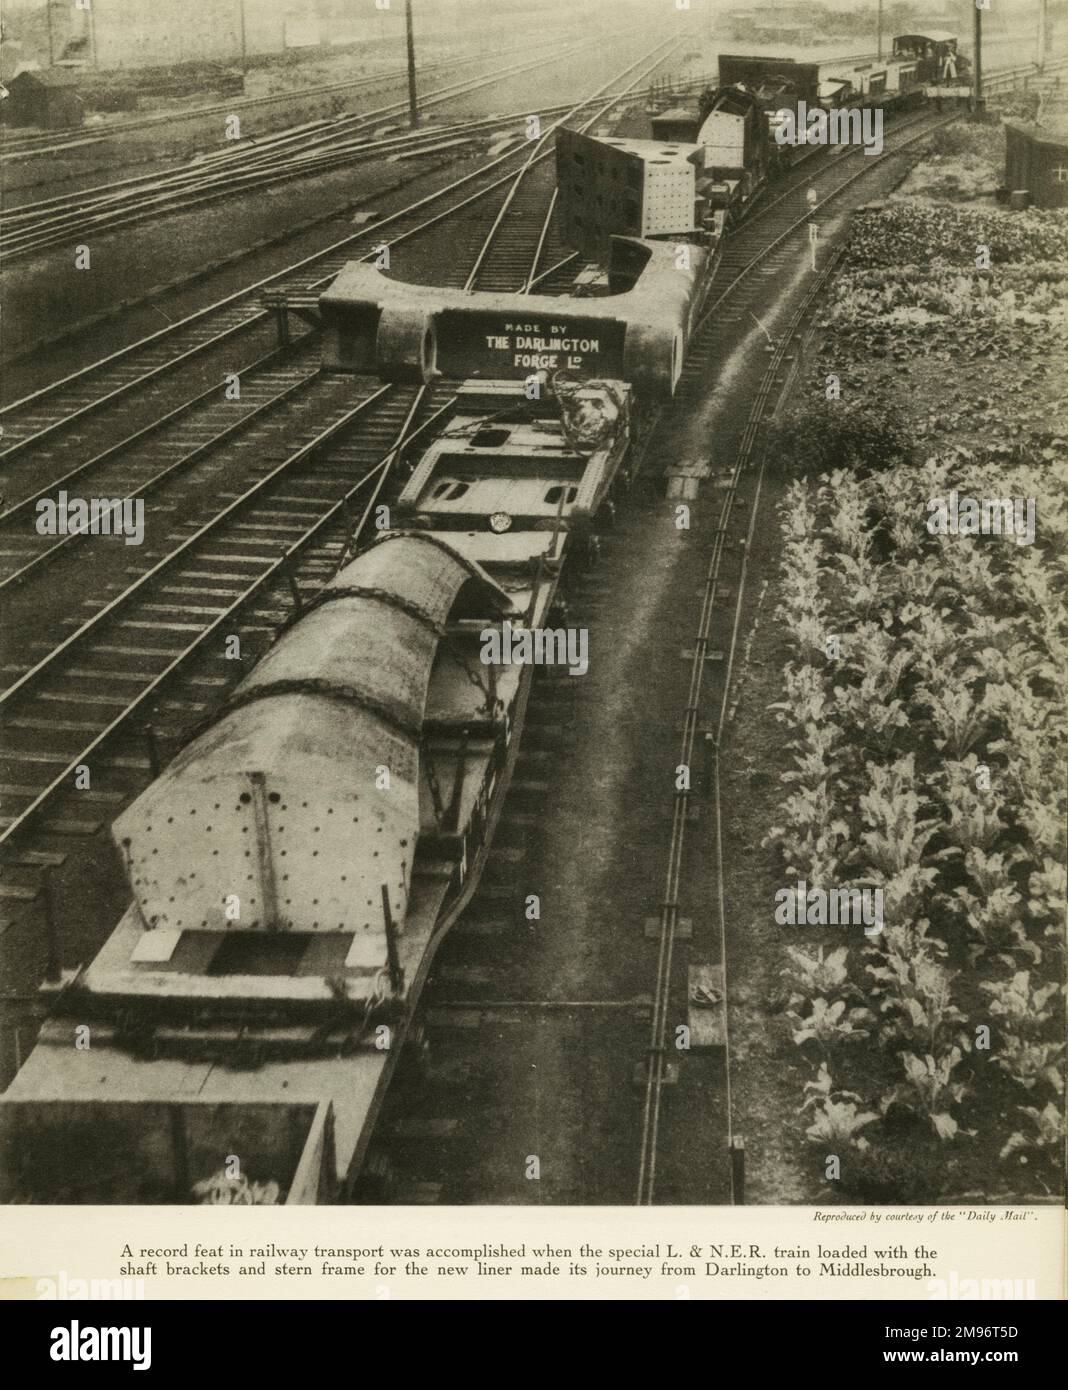 Un'impresa record nel trasporto ferroviario è stata compiuta quando il treno speacial L&NER caricato con le staffe dell'albero e il telaio di poppa per la nuova linea ha fatto il suo viaggio da Darlington a Middlesbrough Foto Stock